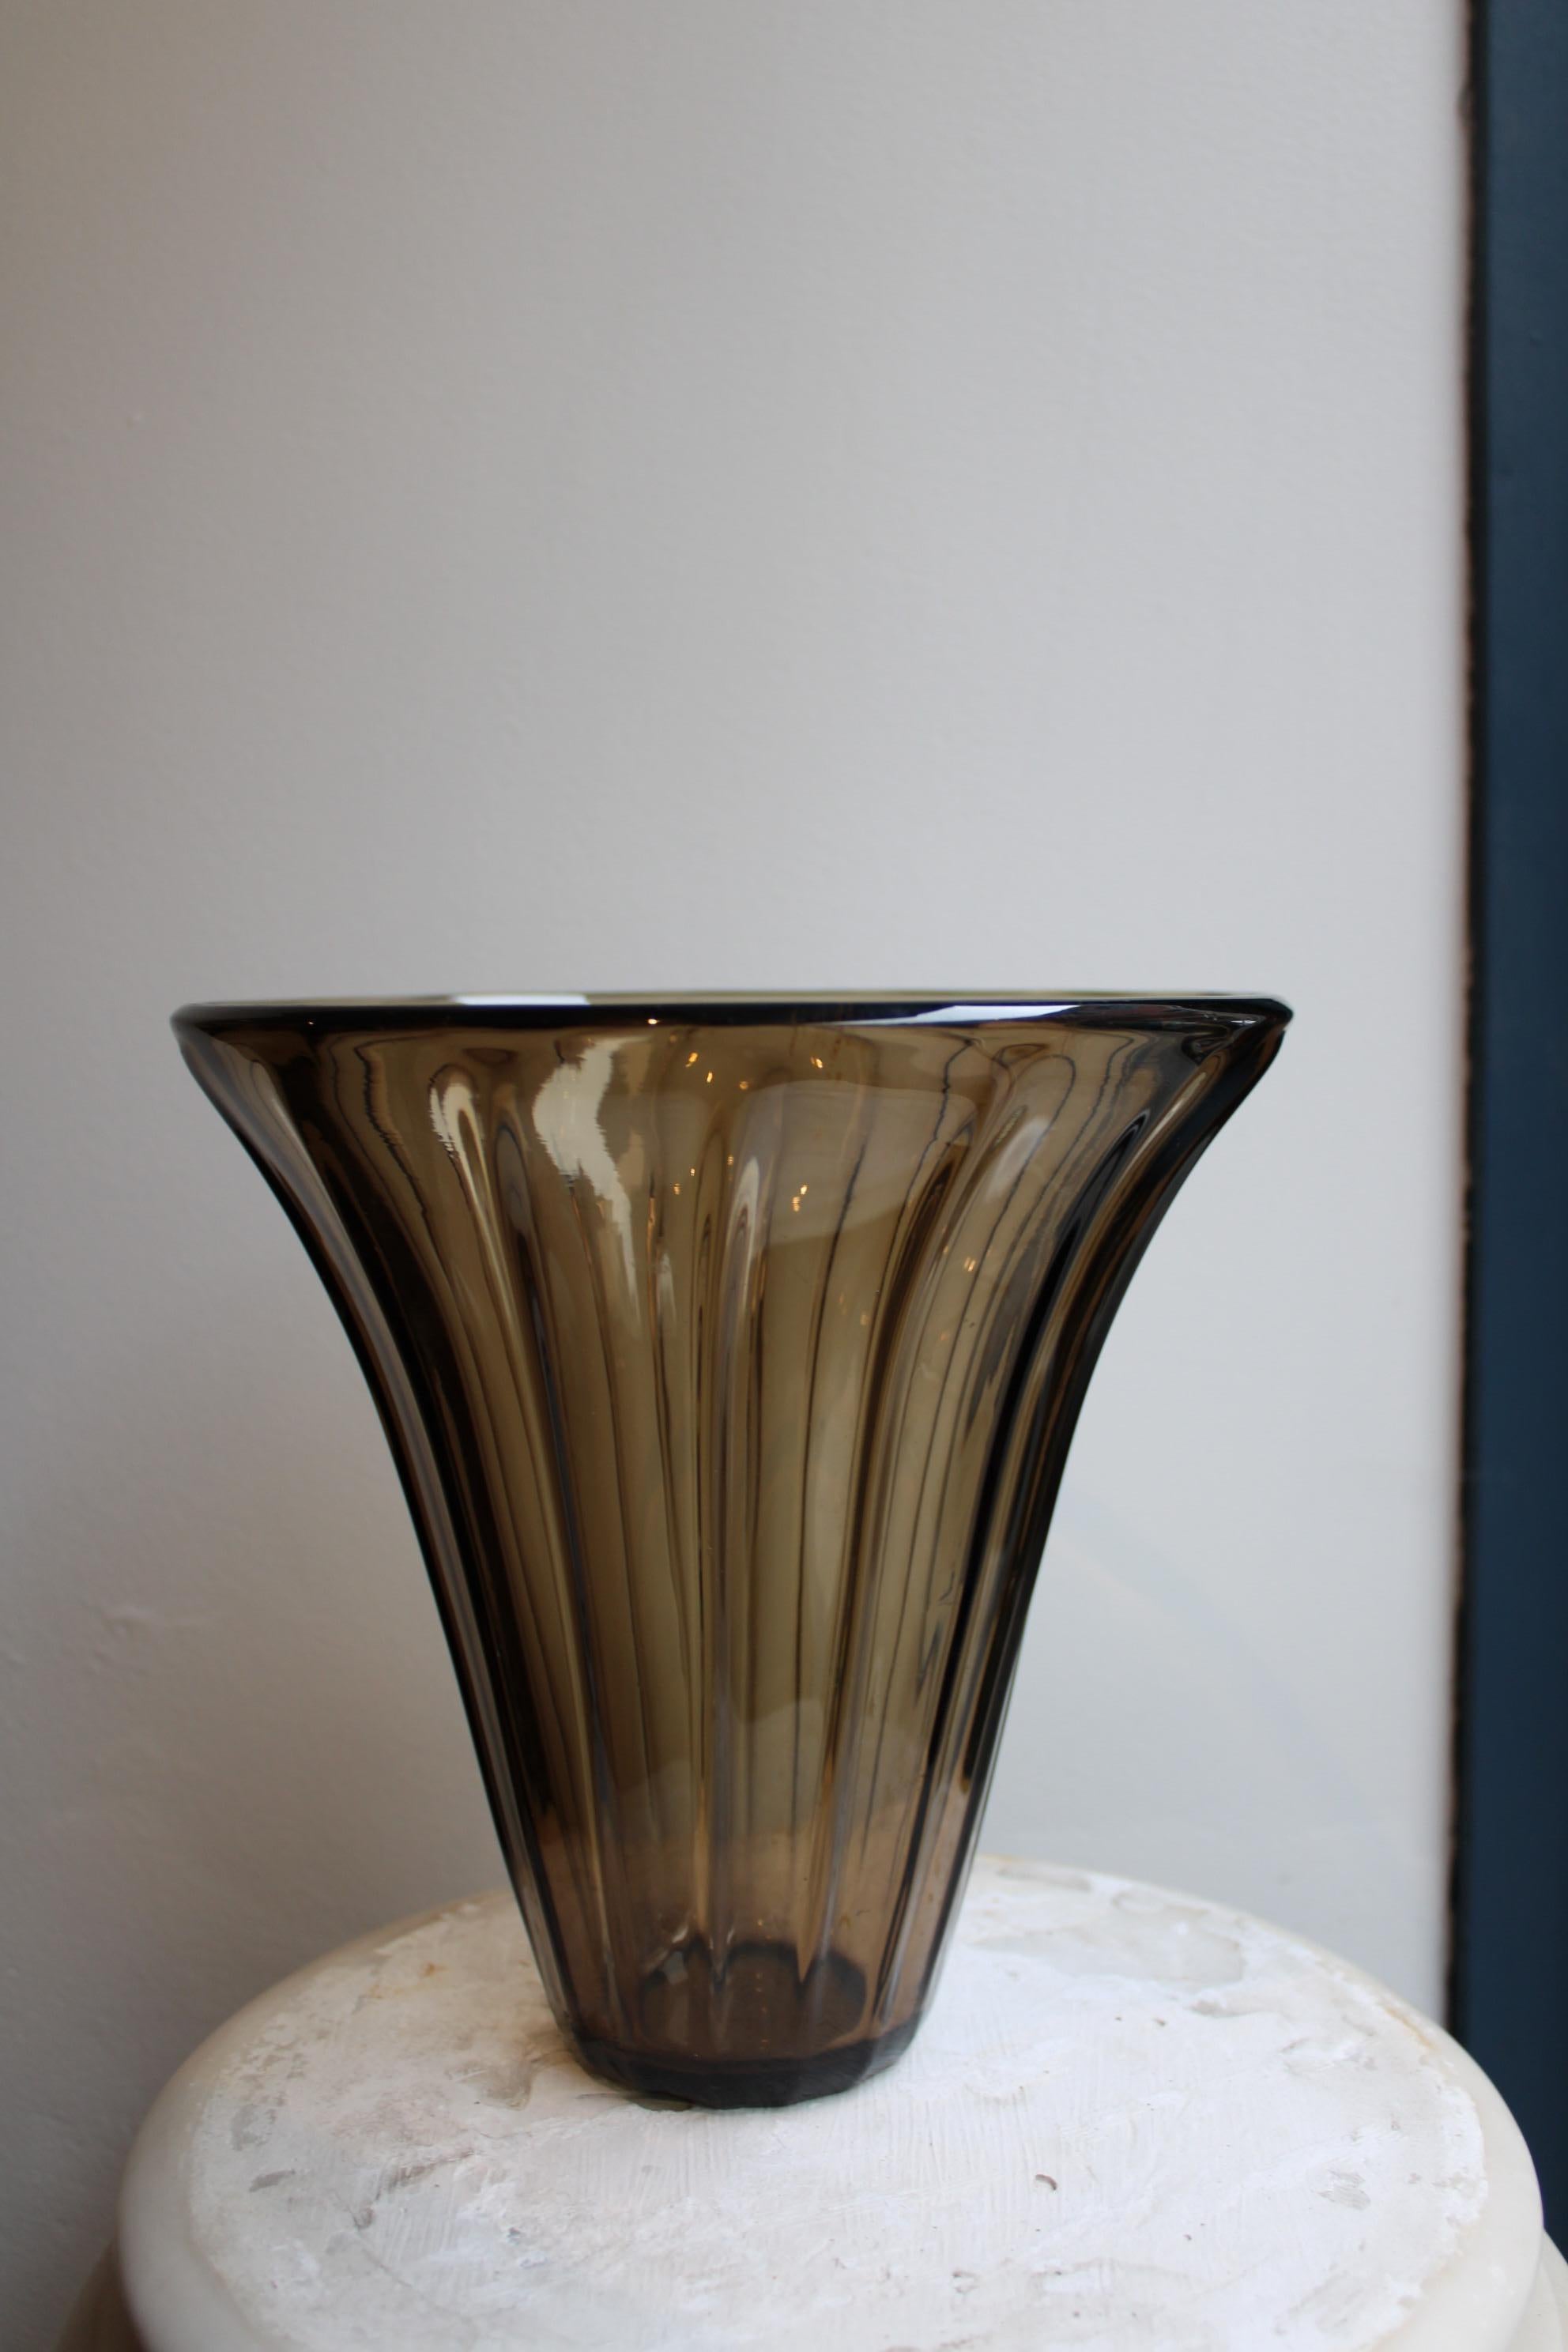 Vase en verre fumé Daum
Signature gravée Daum Nancy France, croix de Lorraine
Art Déco
France, 20ème siècle.

Diamètre de la base 7,5 cm
Diamètre 21 cm
Hauteur 20 cm